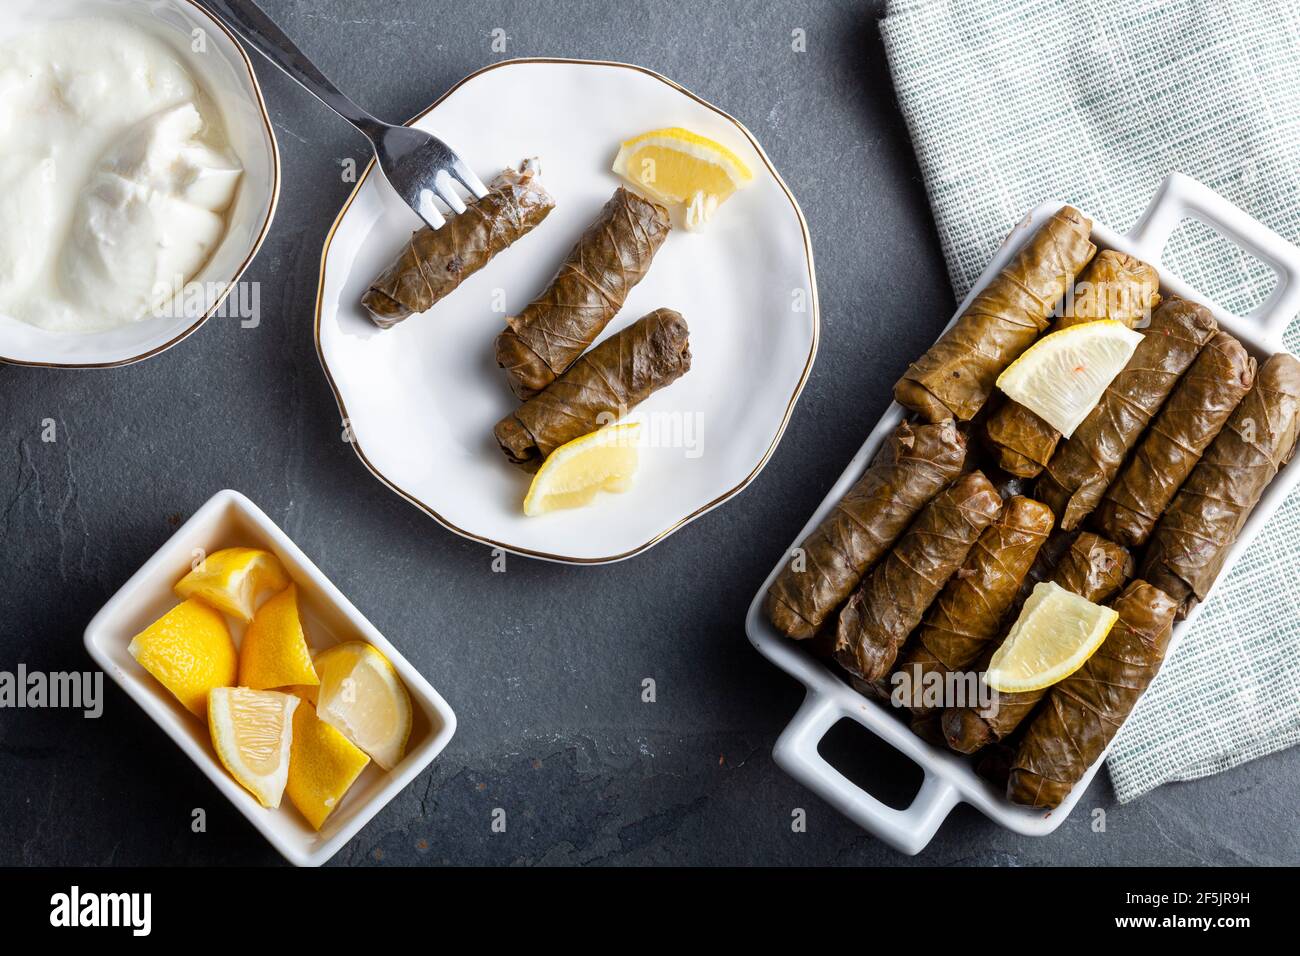 Le Yaprak sarmasi est un plat turc traditionnel fait en enveloppant le farce de riz avec des feuilles de raisin. Servi dans un plateau en porcelaine avec des tranches de citron et une tasse de Banque D'Images